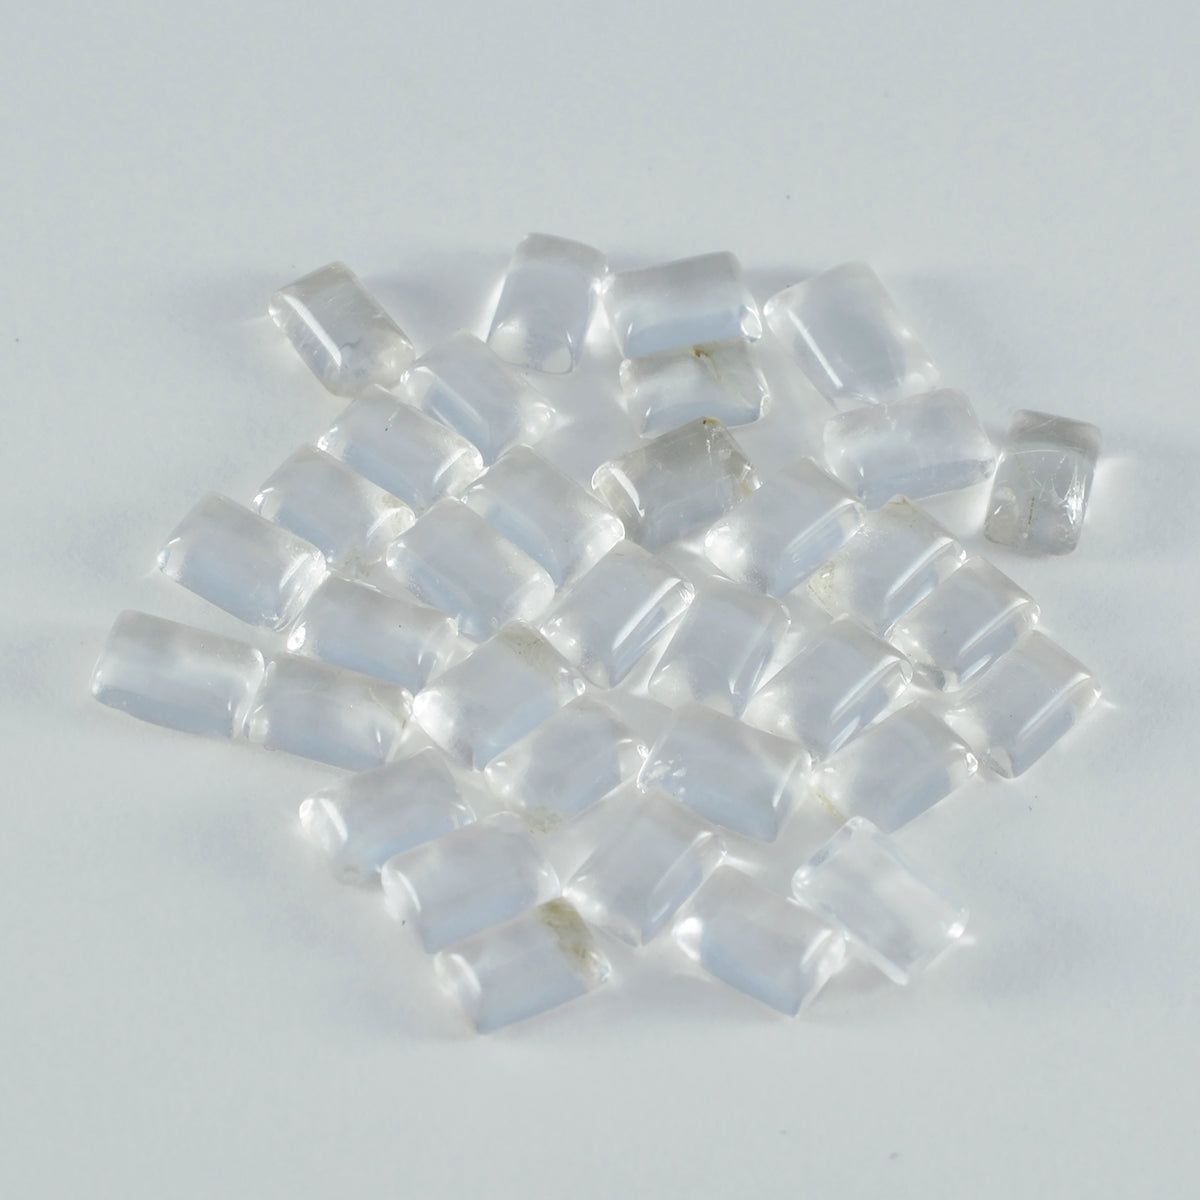 Riyogems – cabochon de quartz en cristal blanc, 4x6mm, forme octogonale, gemme d'excellente qualité, 1 pièce